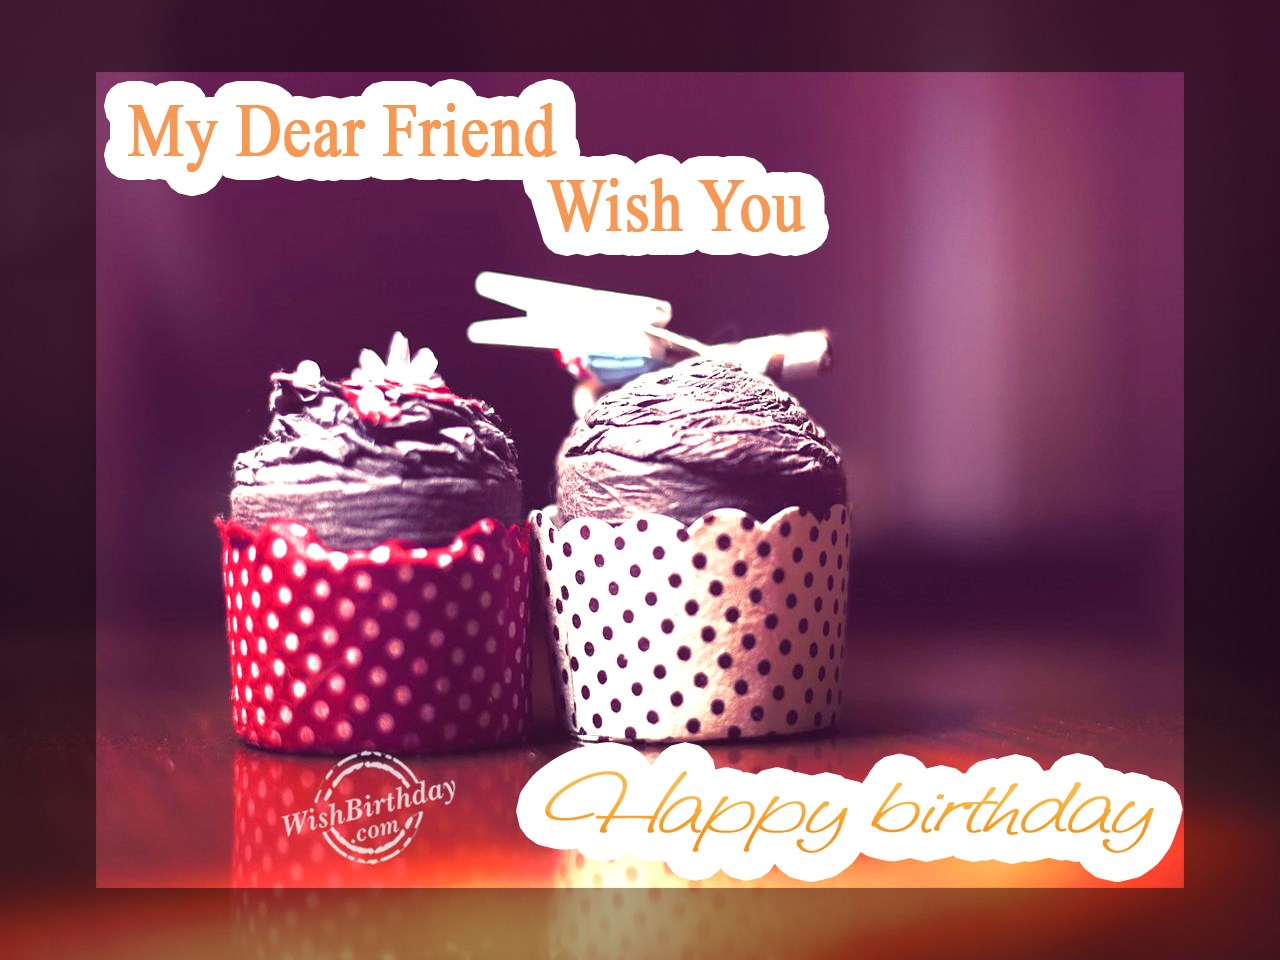 Wishing Happy Birthday To My Dear Friend - Birthday Wishes, Happy ...